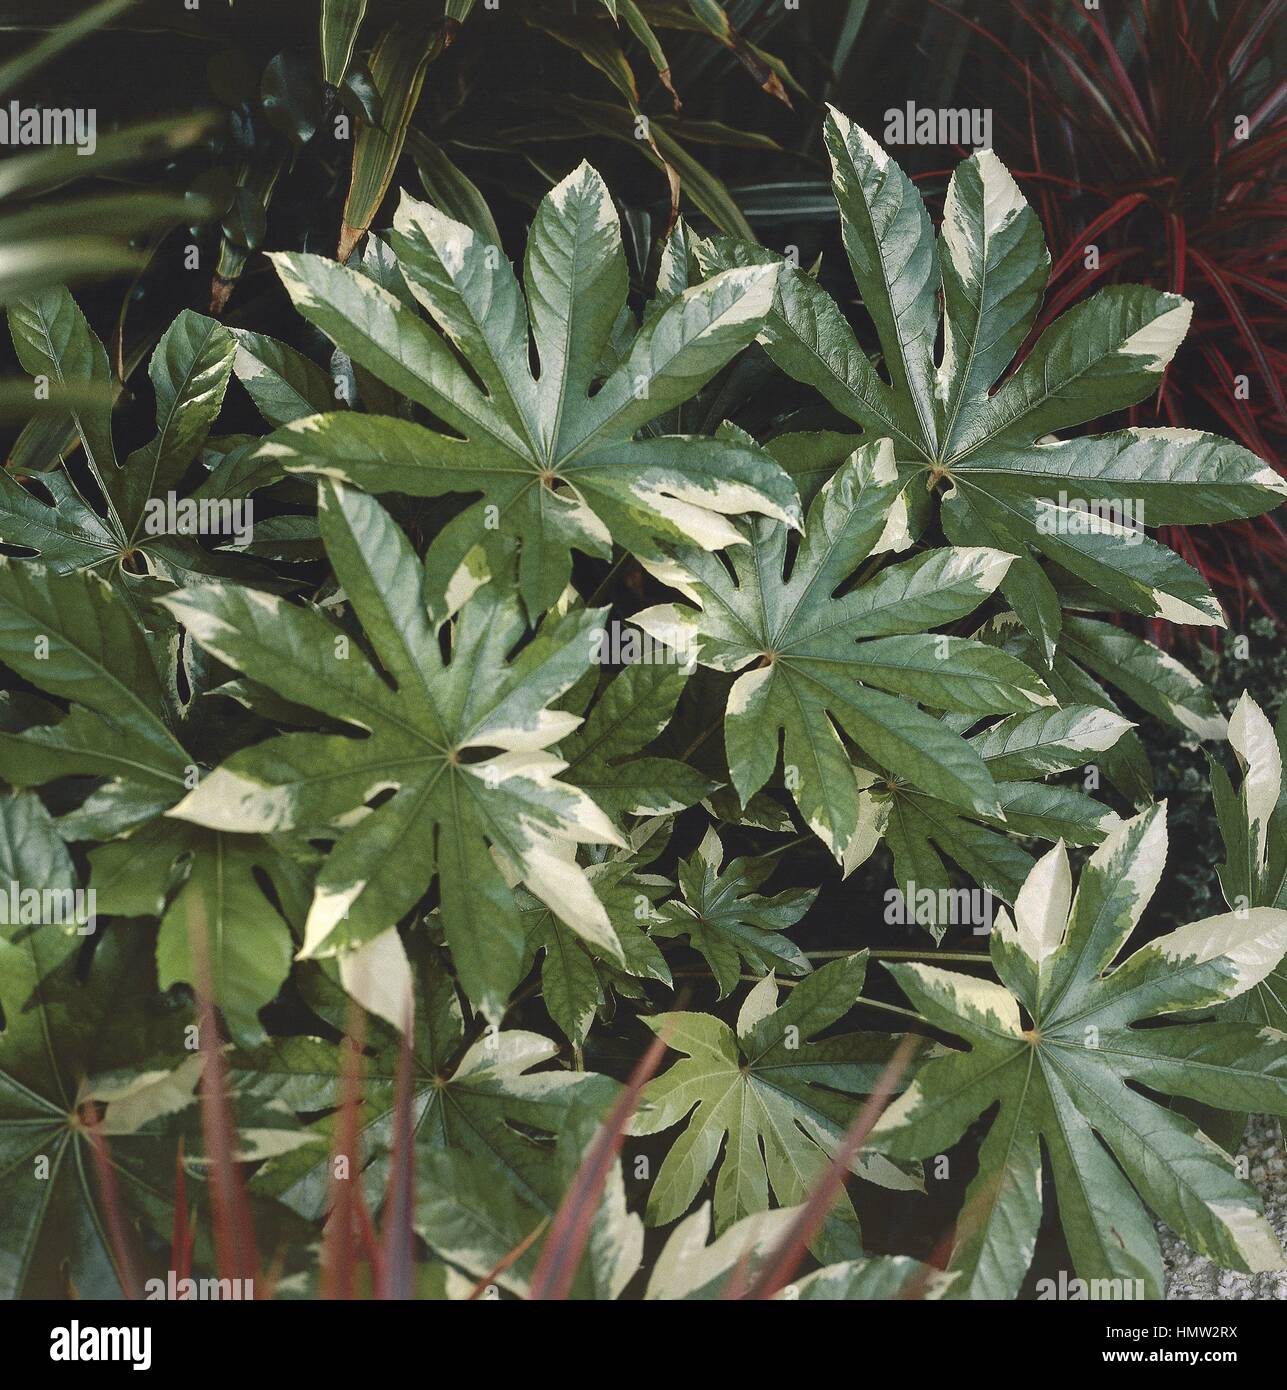 Botany - Araliaceae - Variegated Japanese Aralia (Fatsia japonica or Aralia sieboldii variegata) leaves Stock Photo